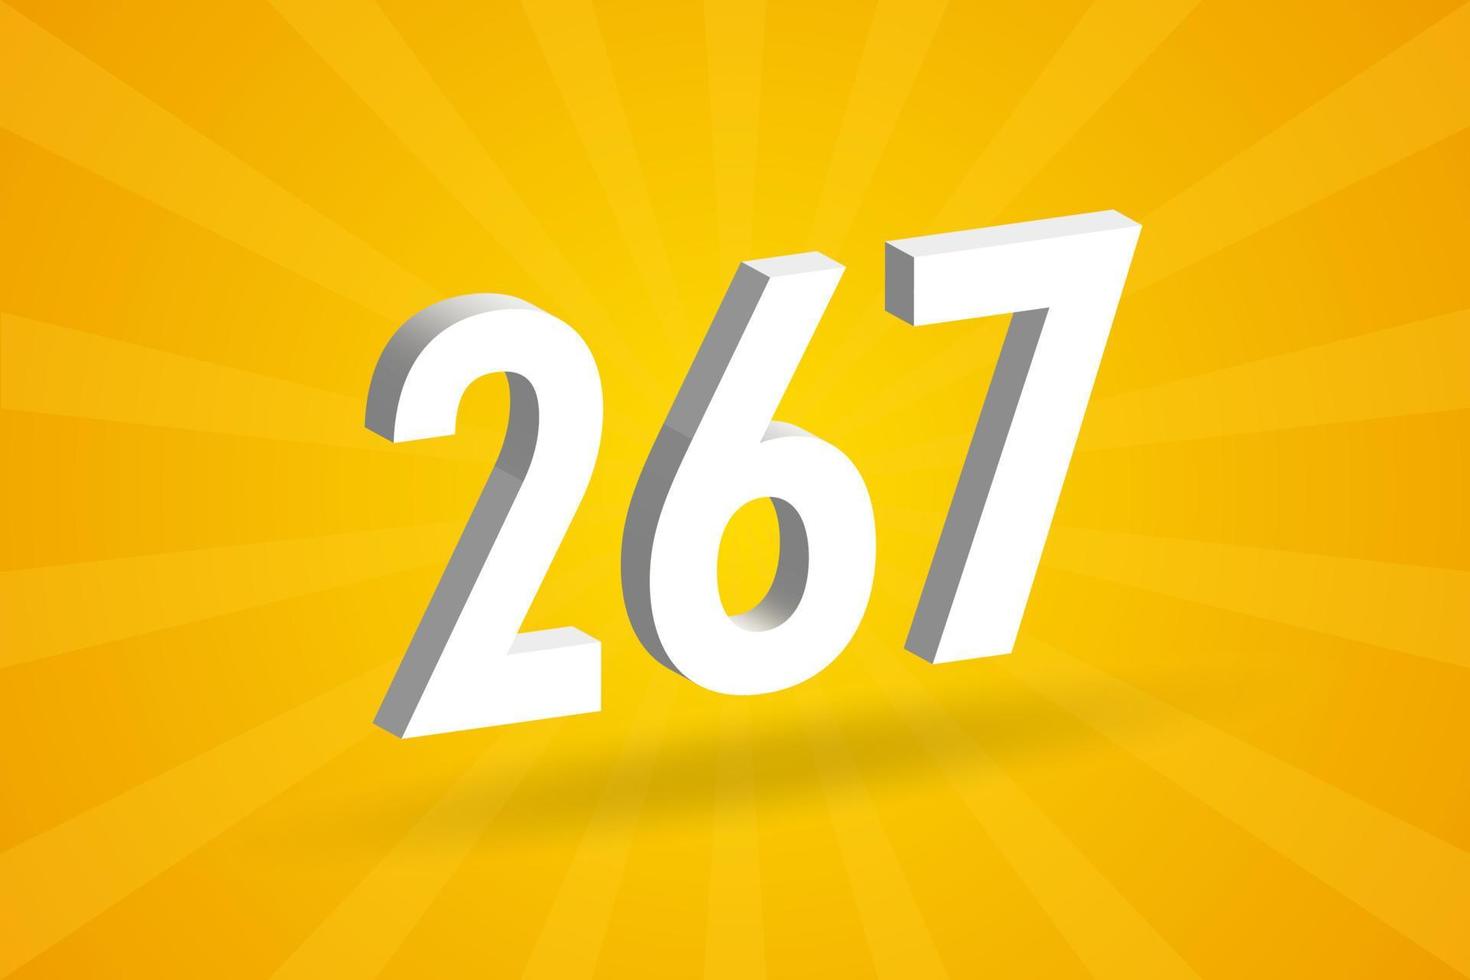 3d 267 numero font alfabeto. bianca 3d numero 267 con giallo sfondo vettore